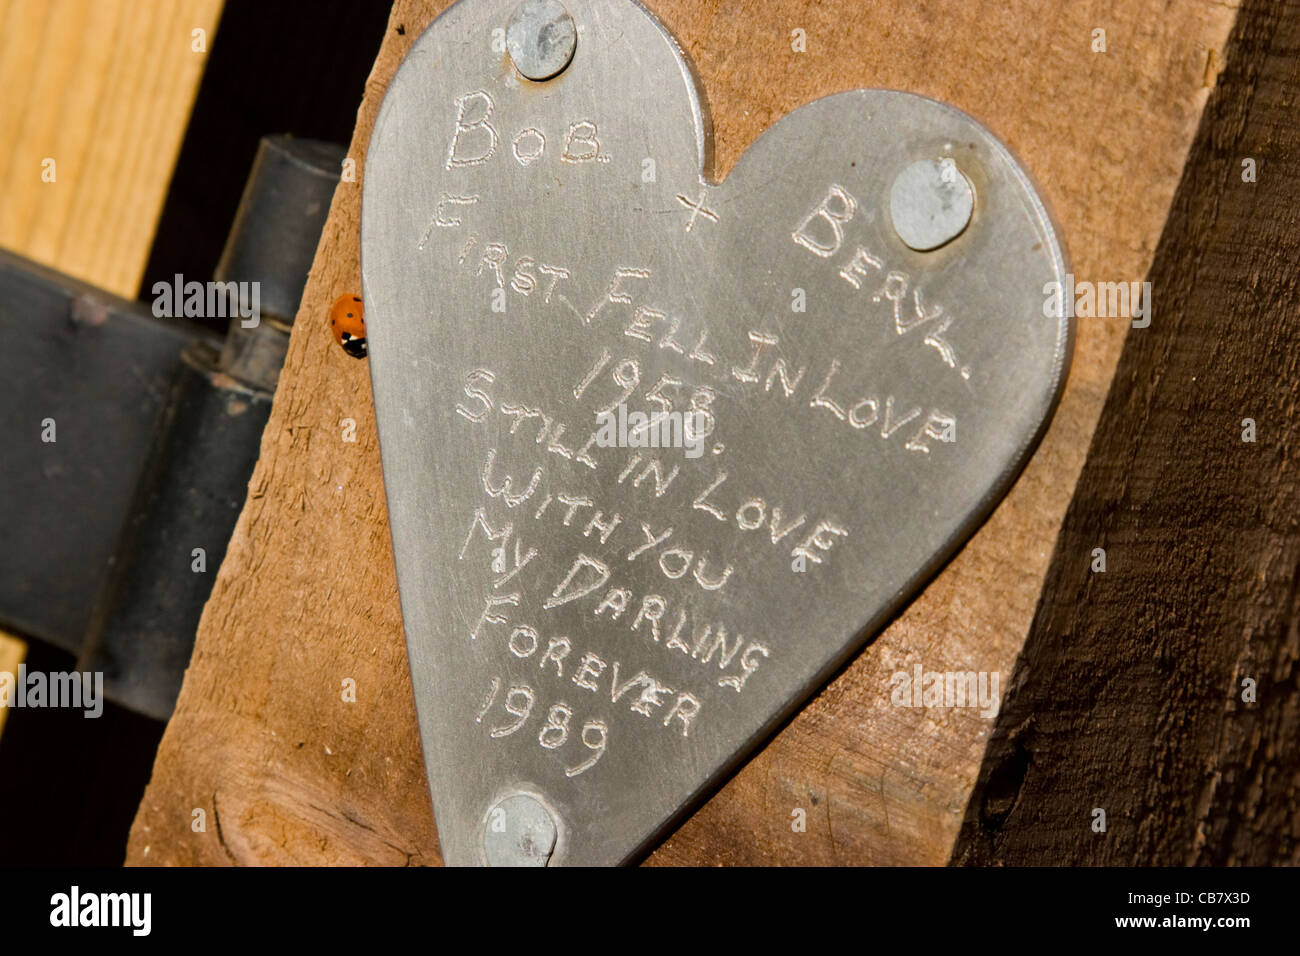 Eine persönliche Liebesbotschaft eingraviert auf eine herzförmige Plakette an einem Wanderweg Pfosten befestigt Stockfoto